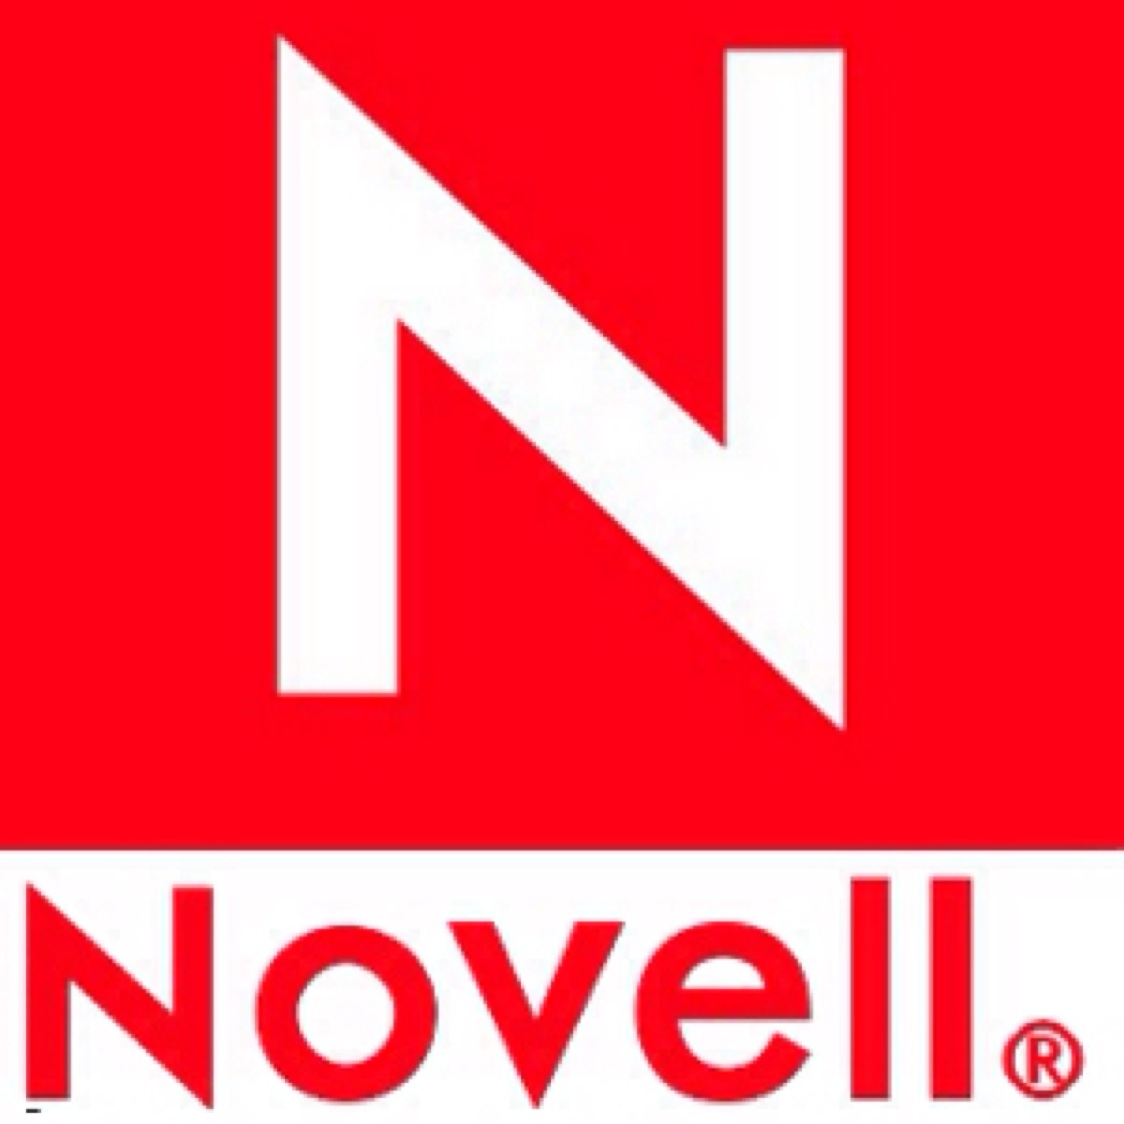 logo Novell